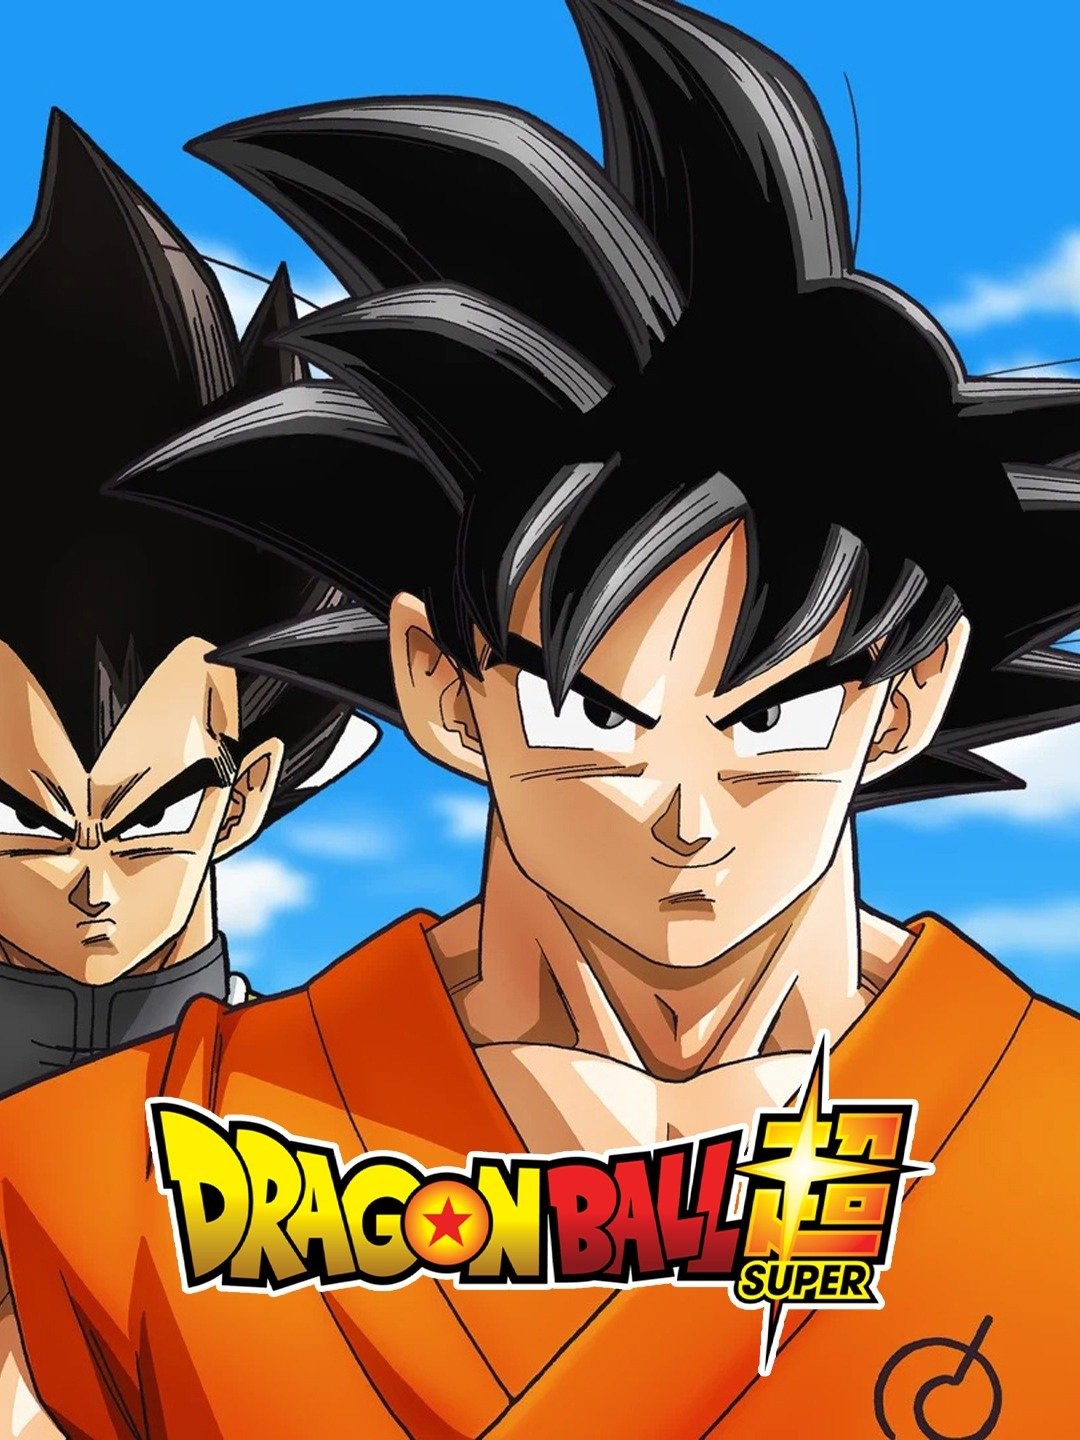 Watch Dragon Ball Z season 1 episode 7 streaming online